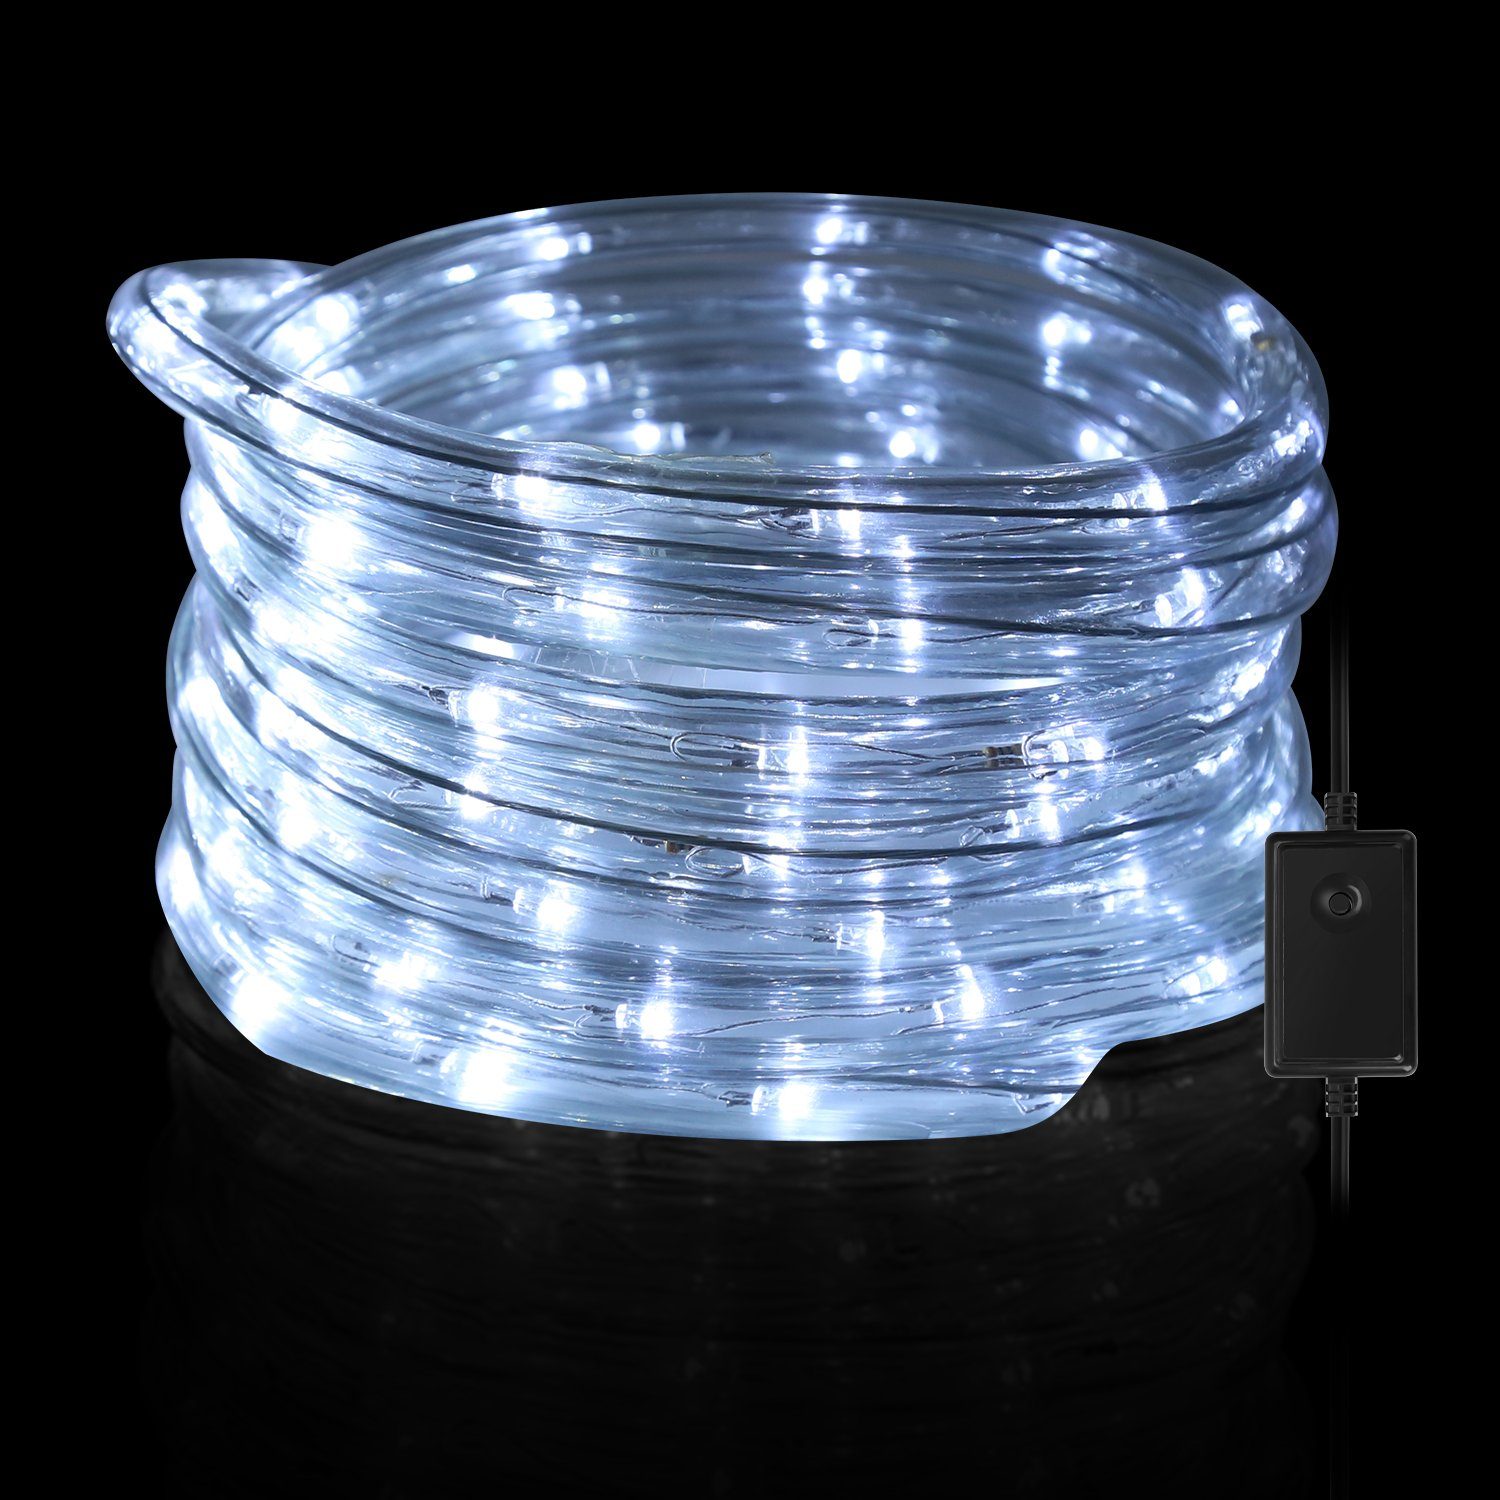 LETGOSPT LED-Streifen 2 Stück LED Innenlichtleiste Innenbeleuchtung 108LED  12V Weiß Leuchtet, mit EIN/AUS Schalter für Auto Wohnmobile LKW Van Küche